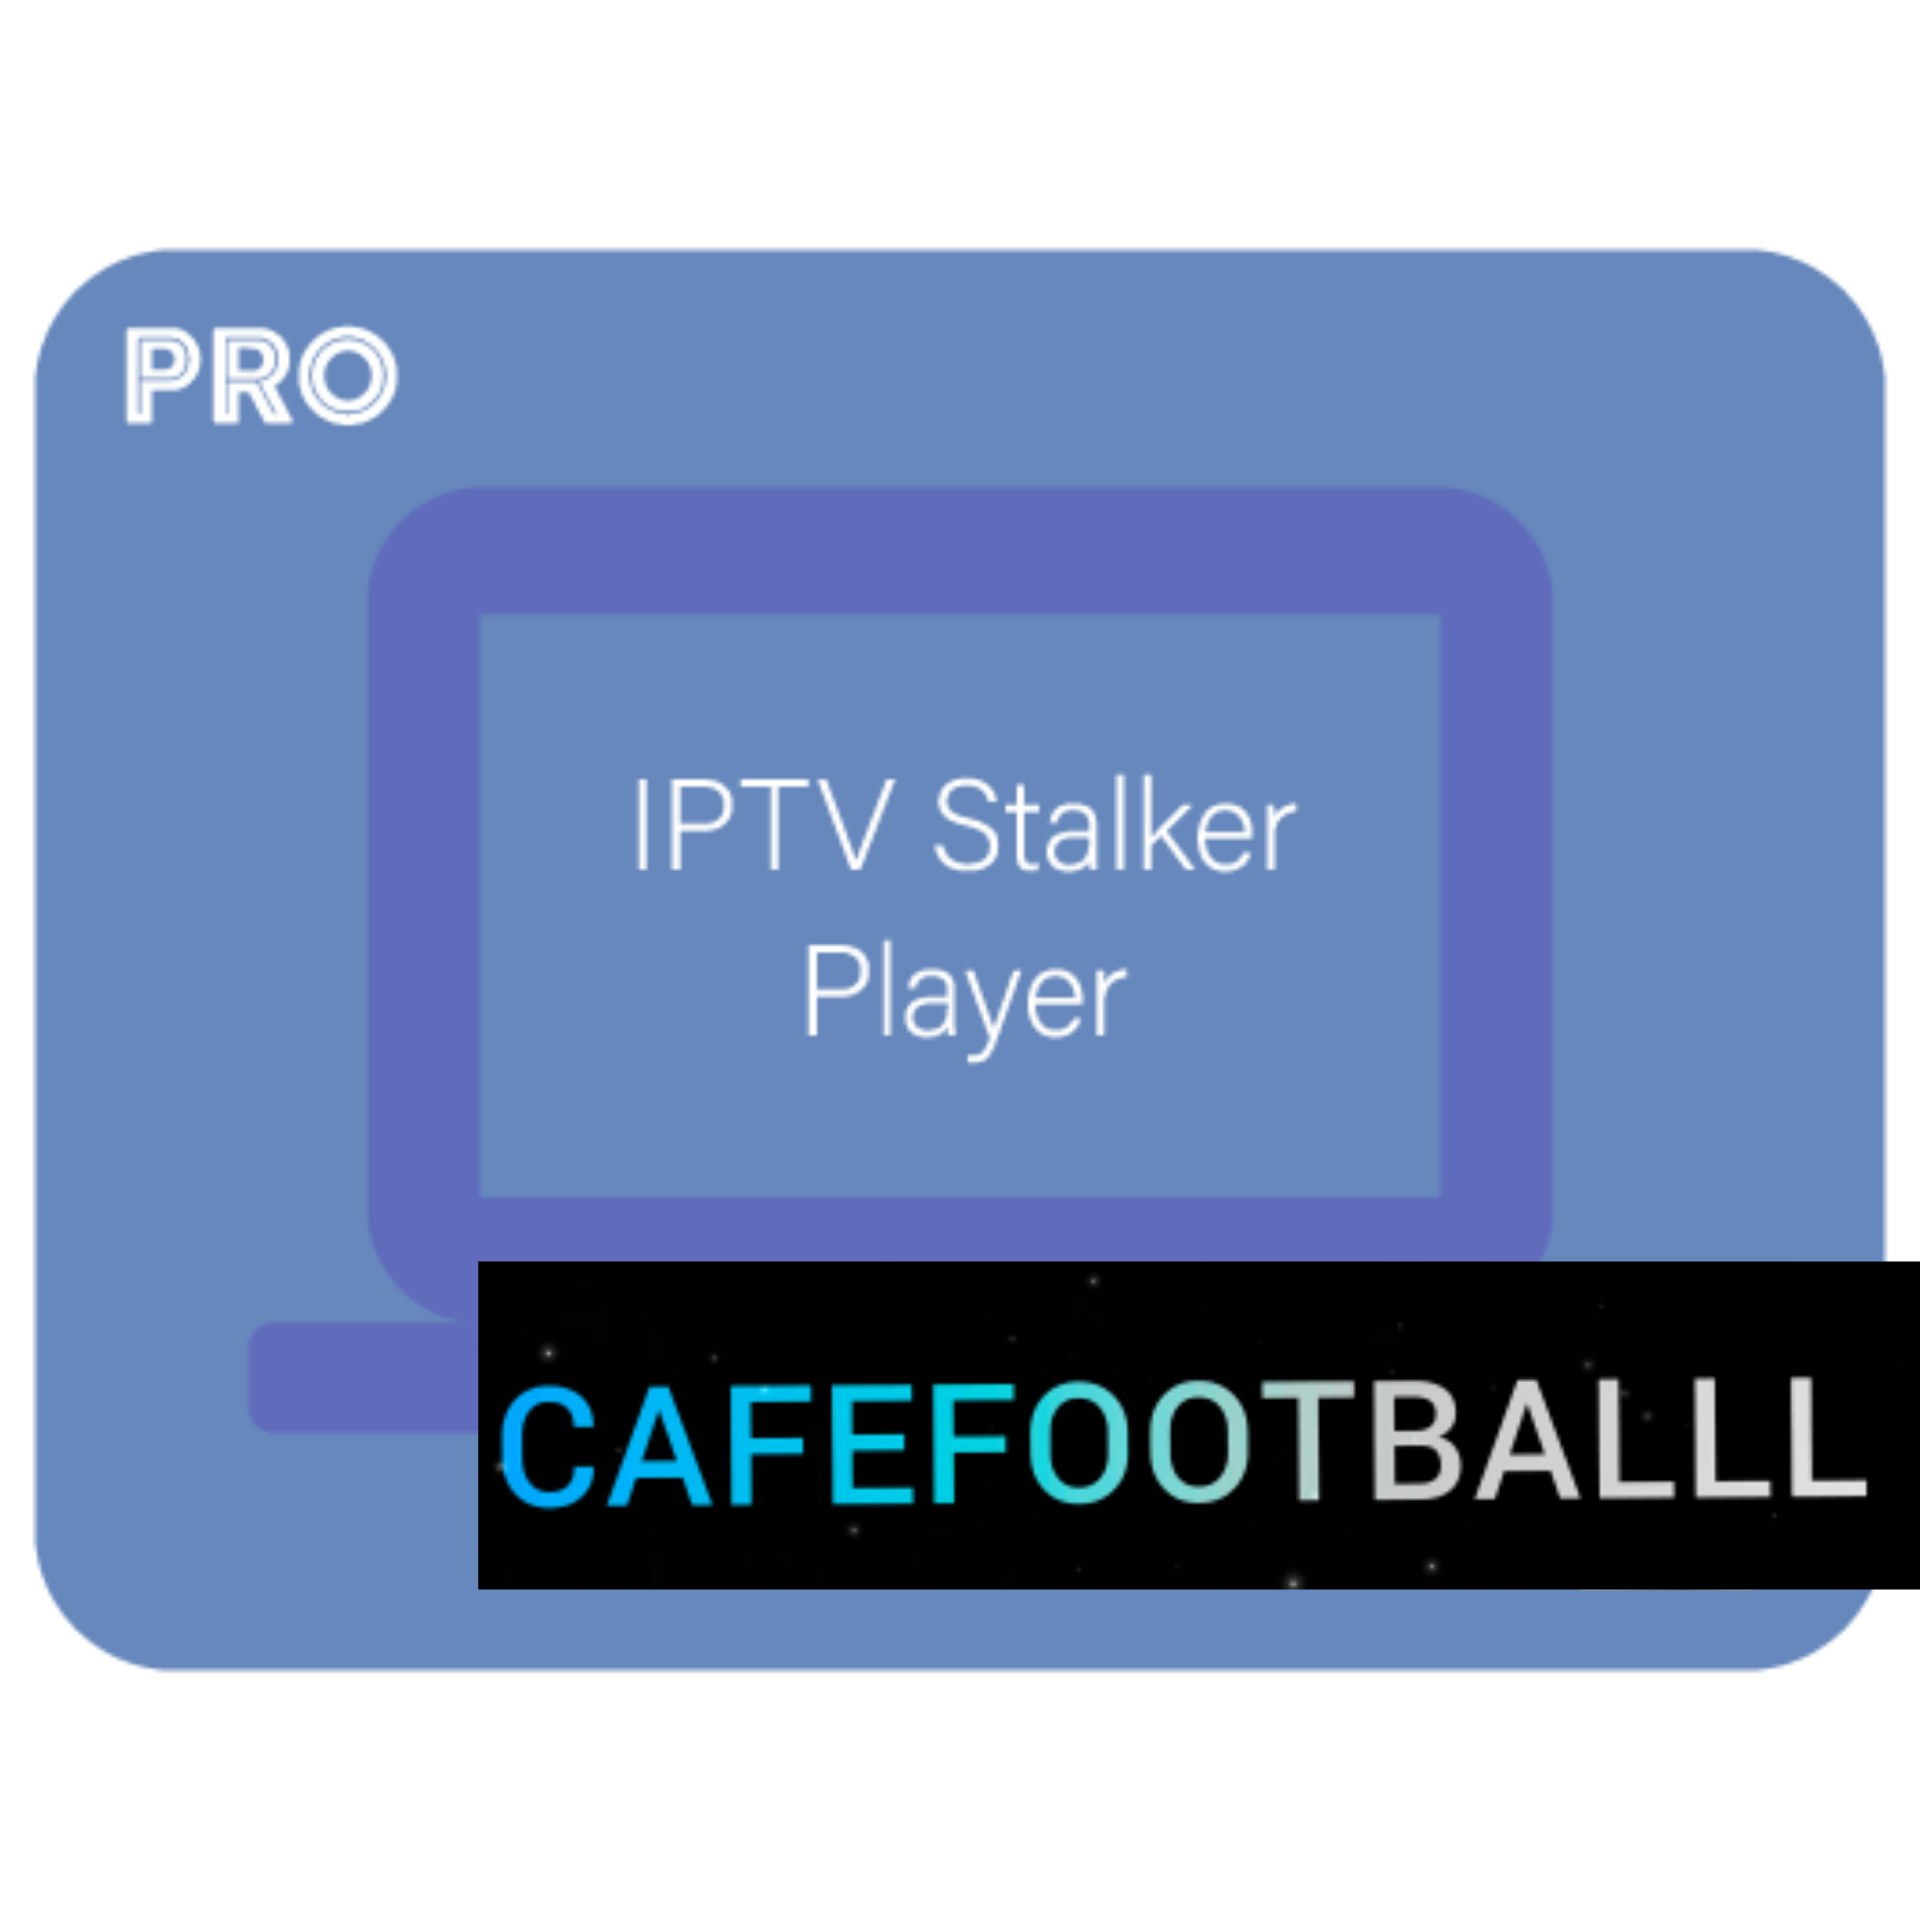 Iptv Stalker Player V1 43 Pro Apk